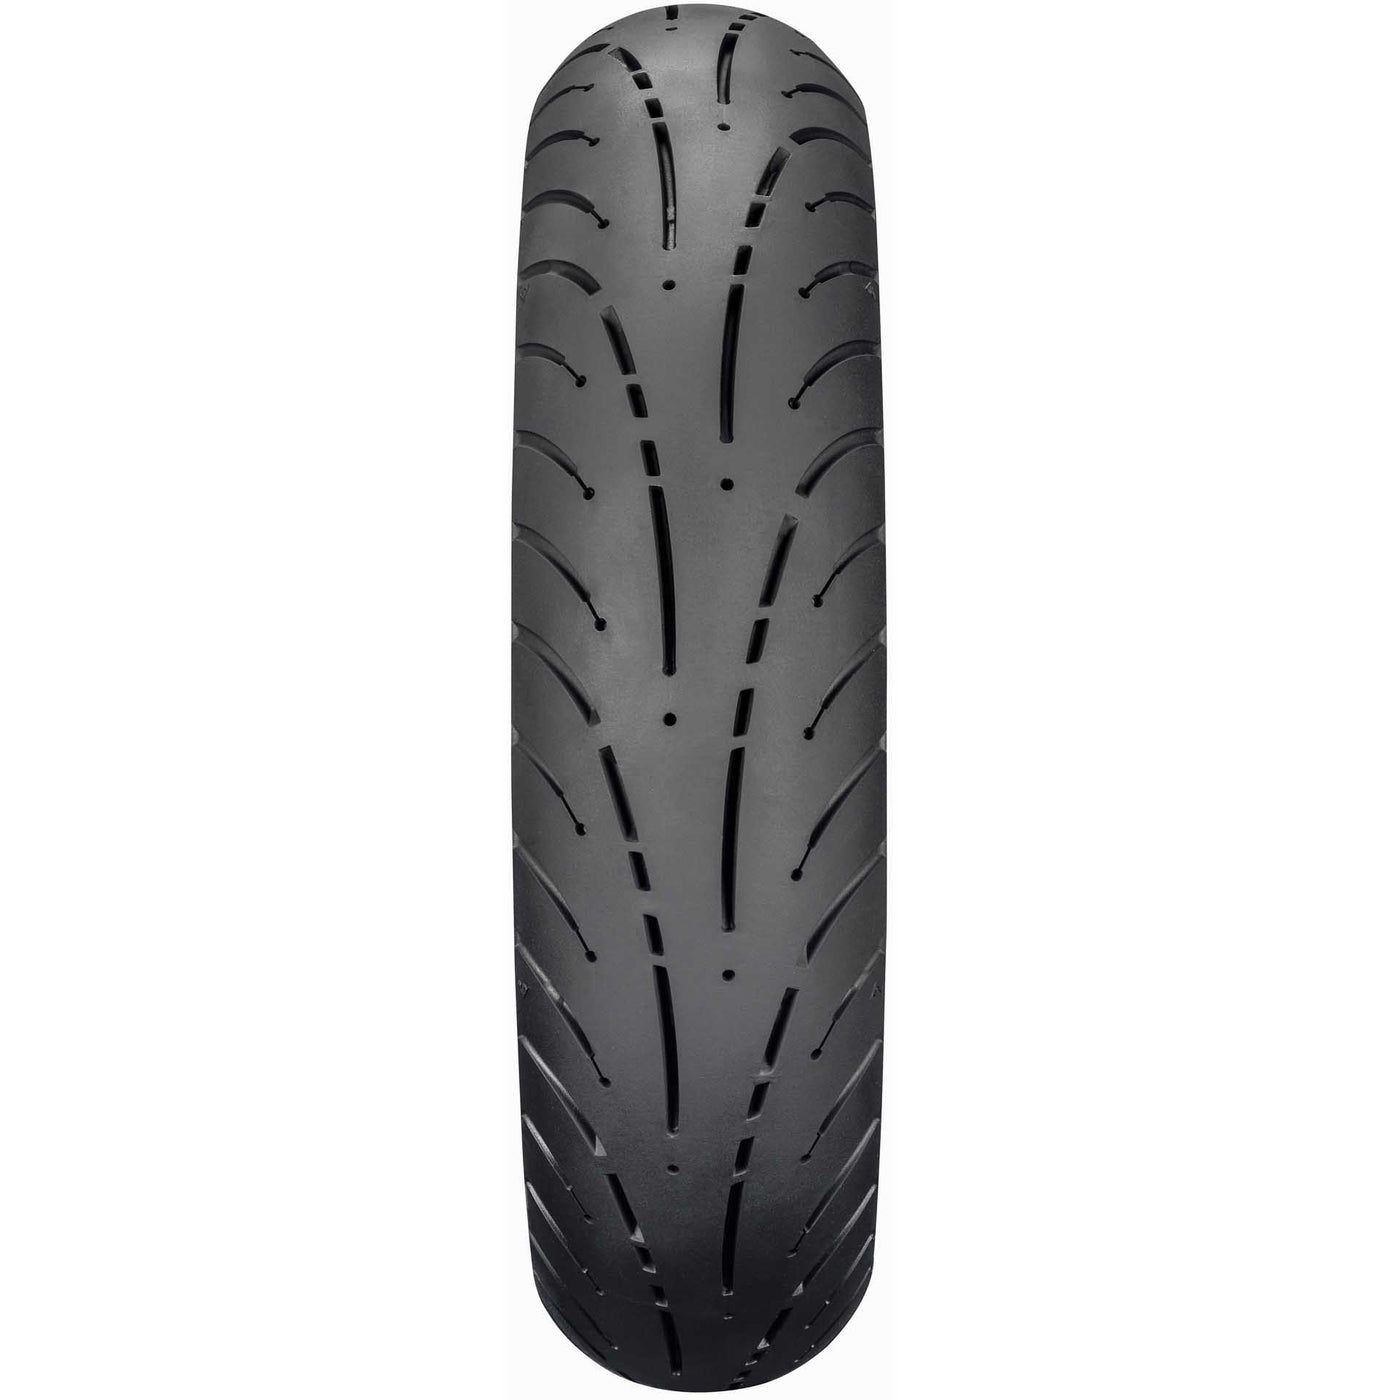 Dunlop Elite 4 Tire